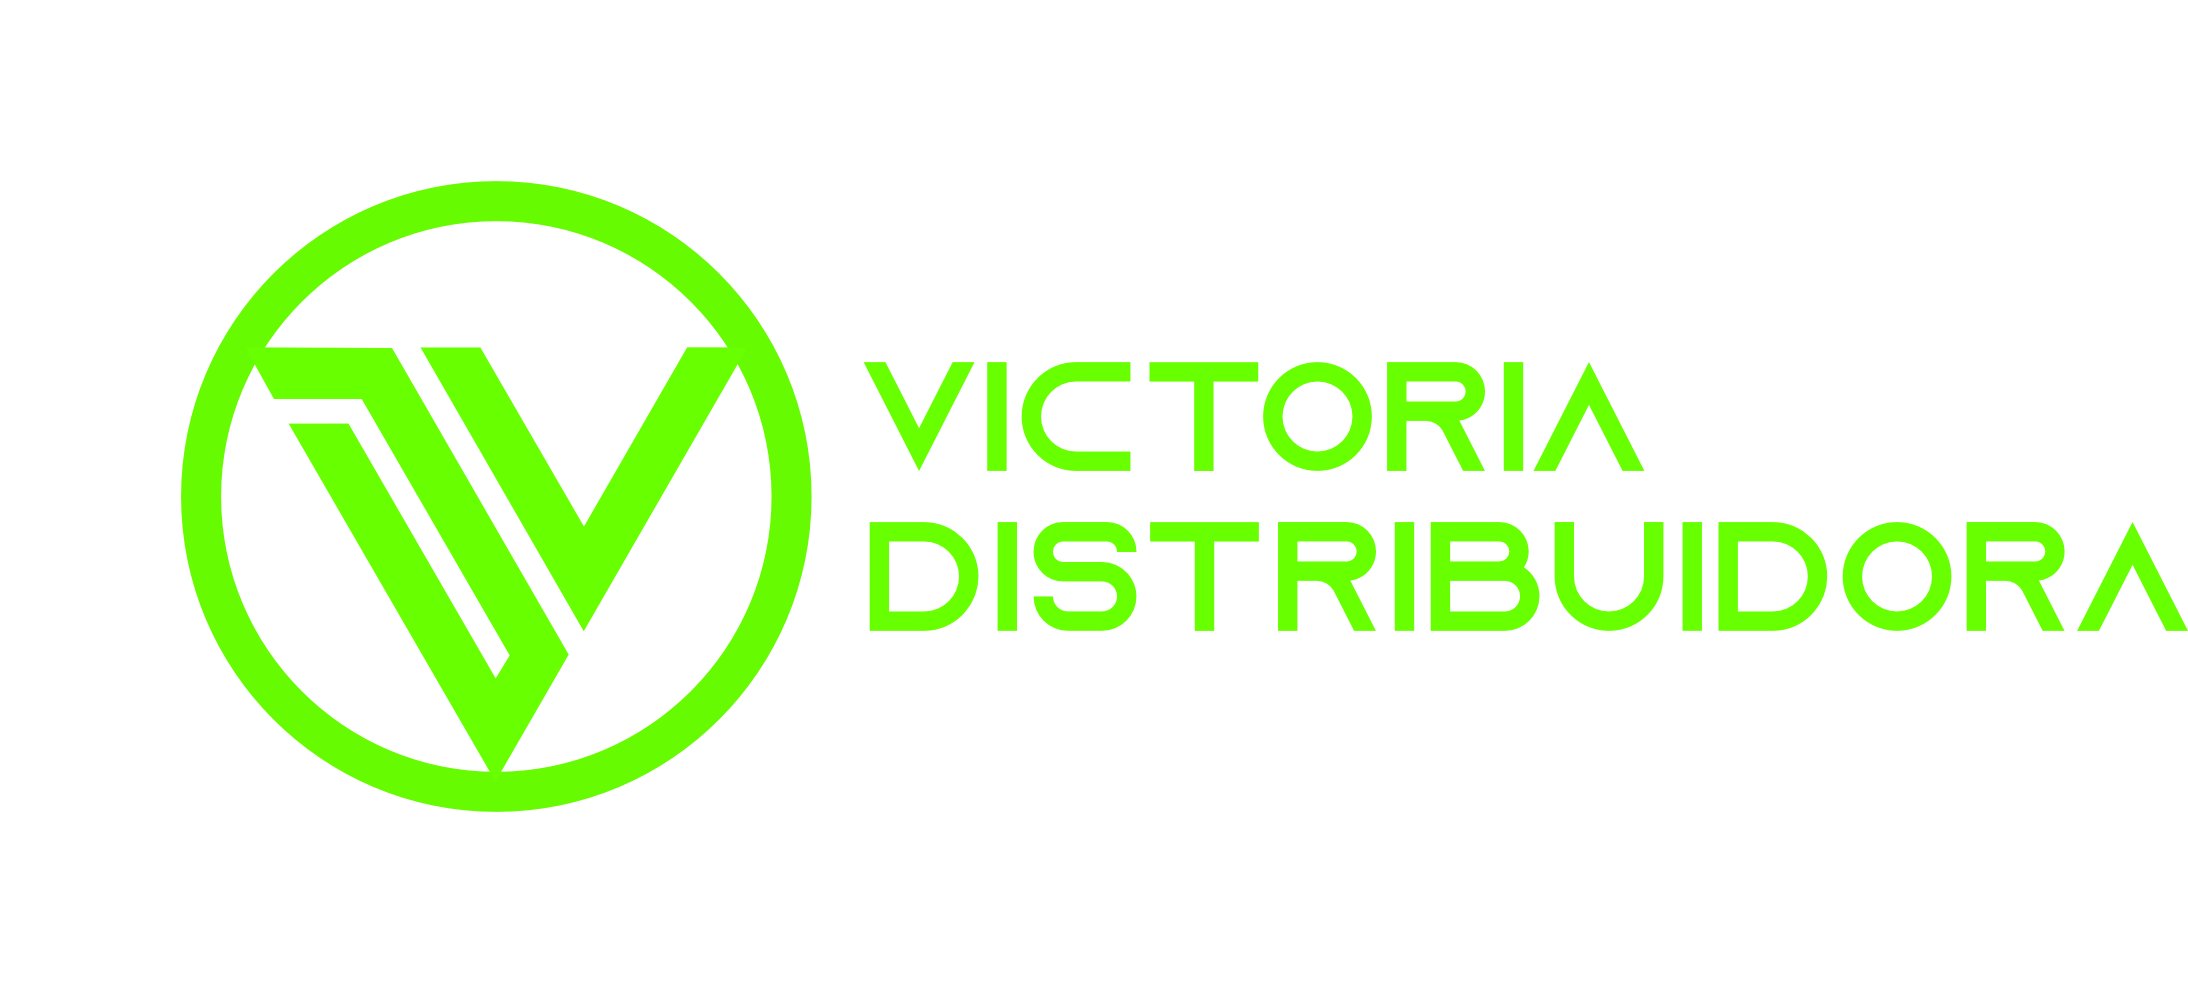 Distribuidora Victoria